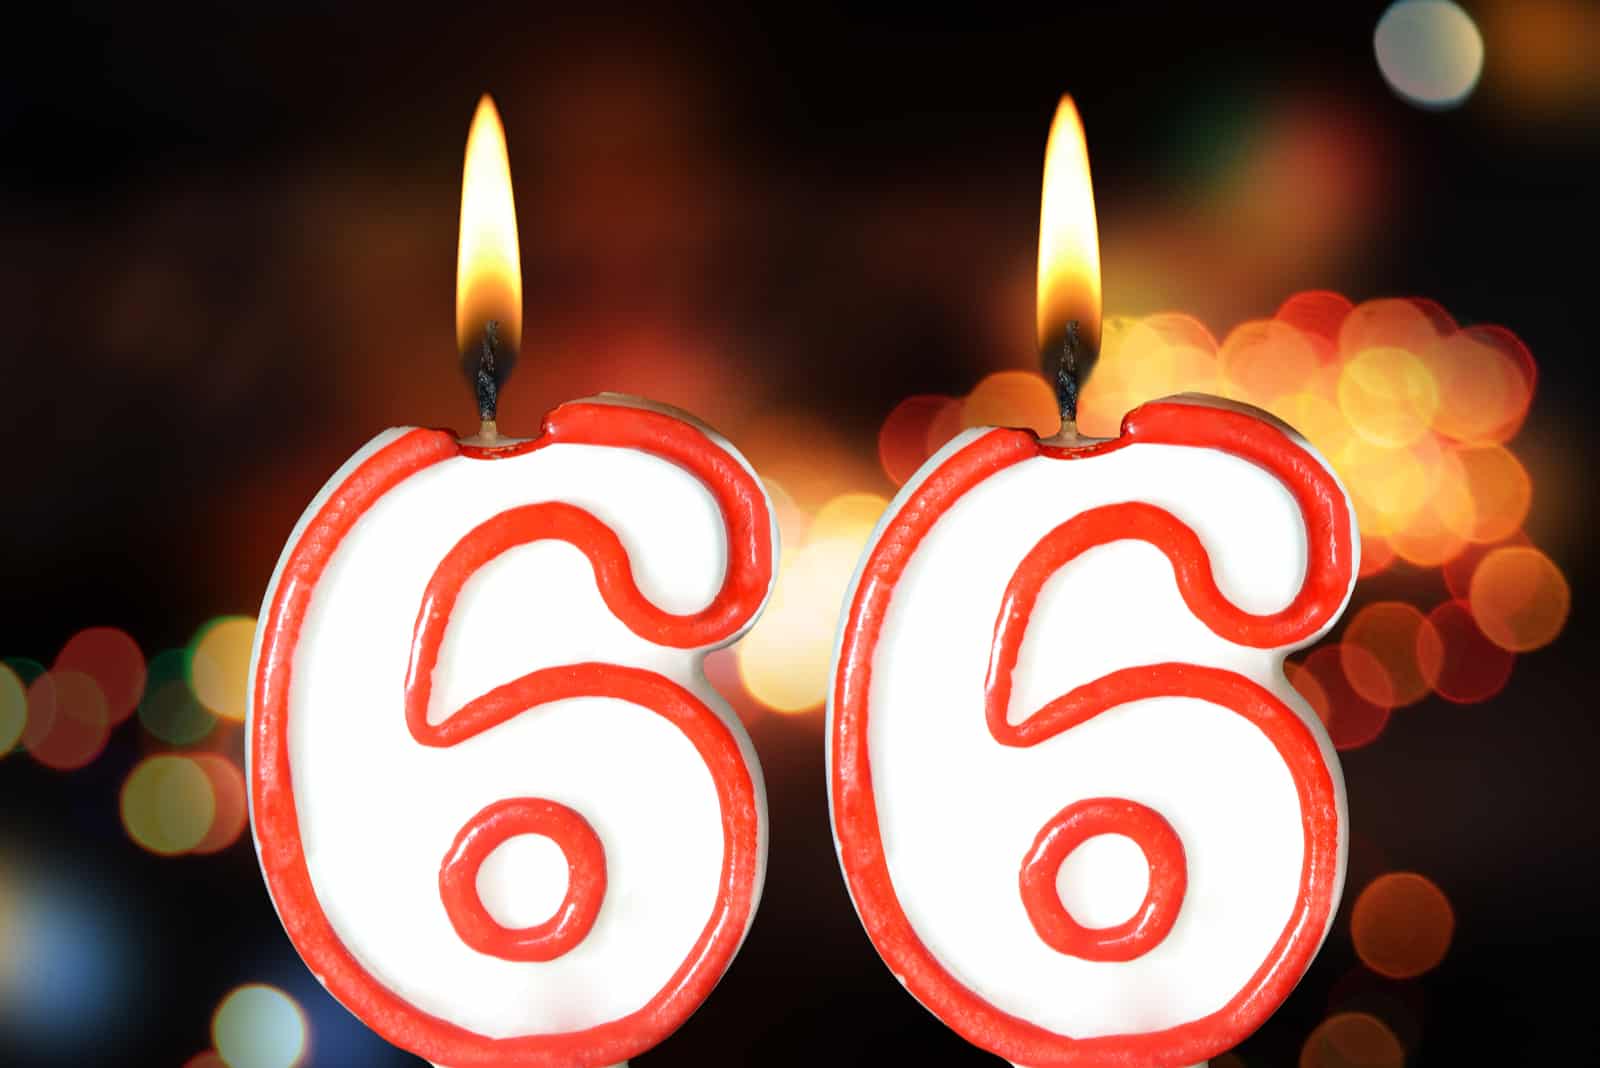 66 Bedeutung: Bist du ein Glückspilz oder ein Pechvogel?